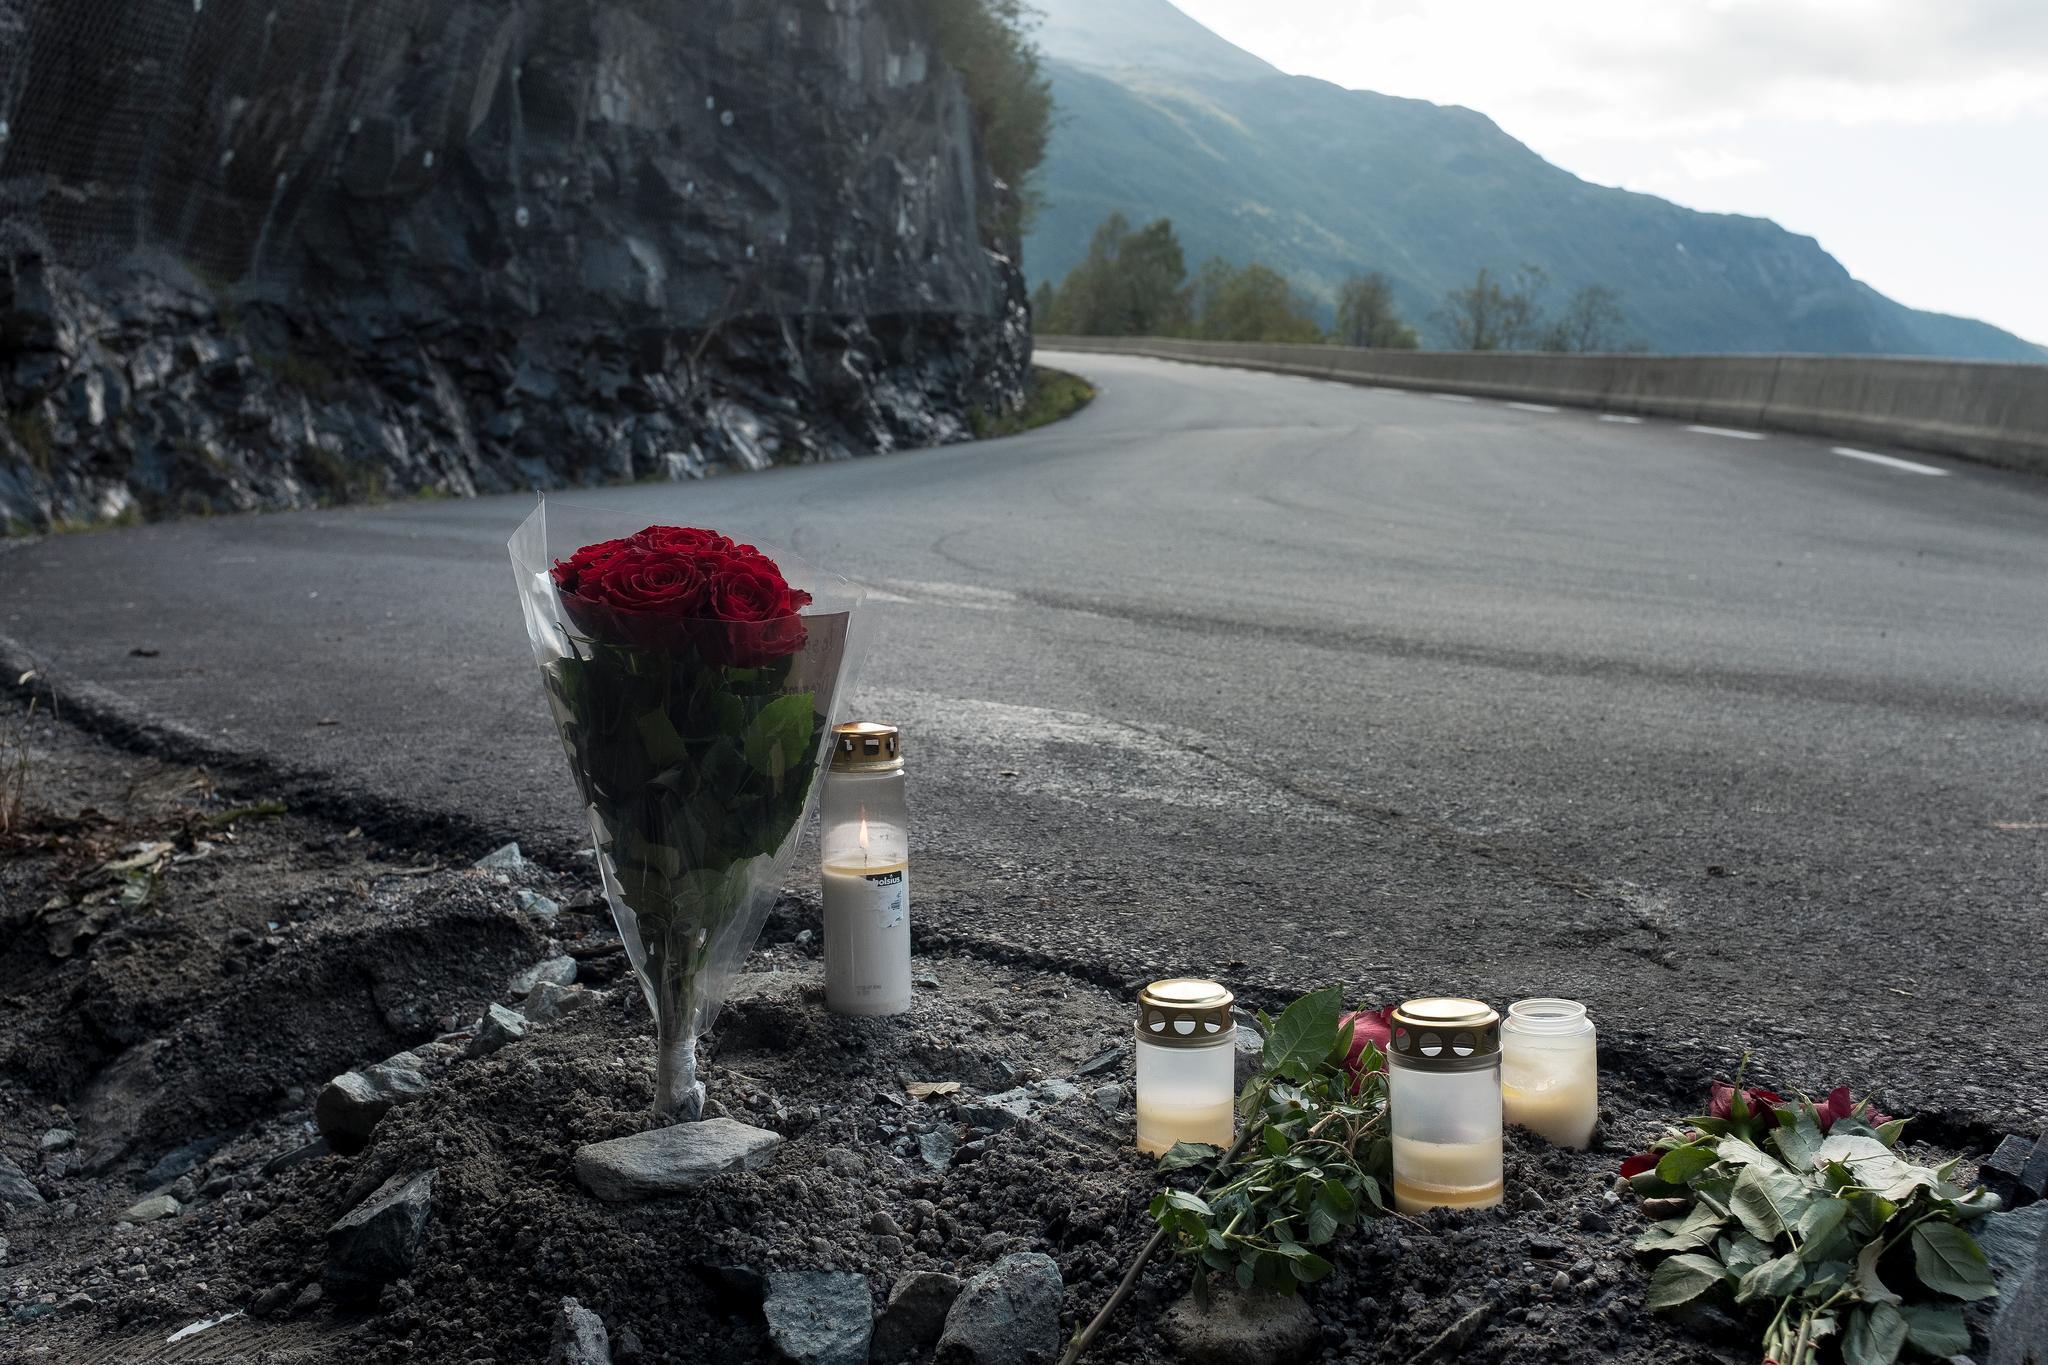 Tre kvinner og to menn omkom da en amerikansk veteranbil kjørte inn i en fjellvegg på Rjukan nær Gaustatoppen i september 2018. Foto: Carina Johansen / NTB scanpix